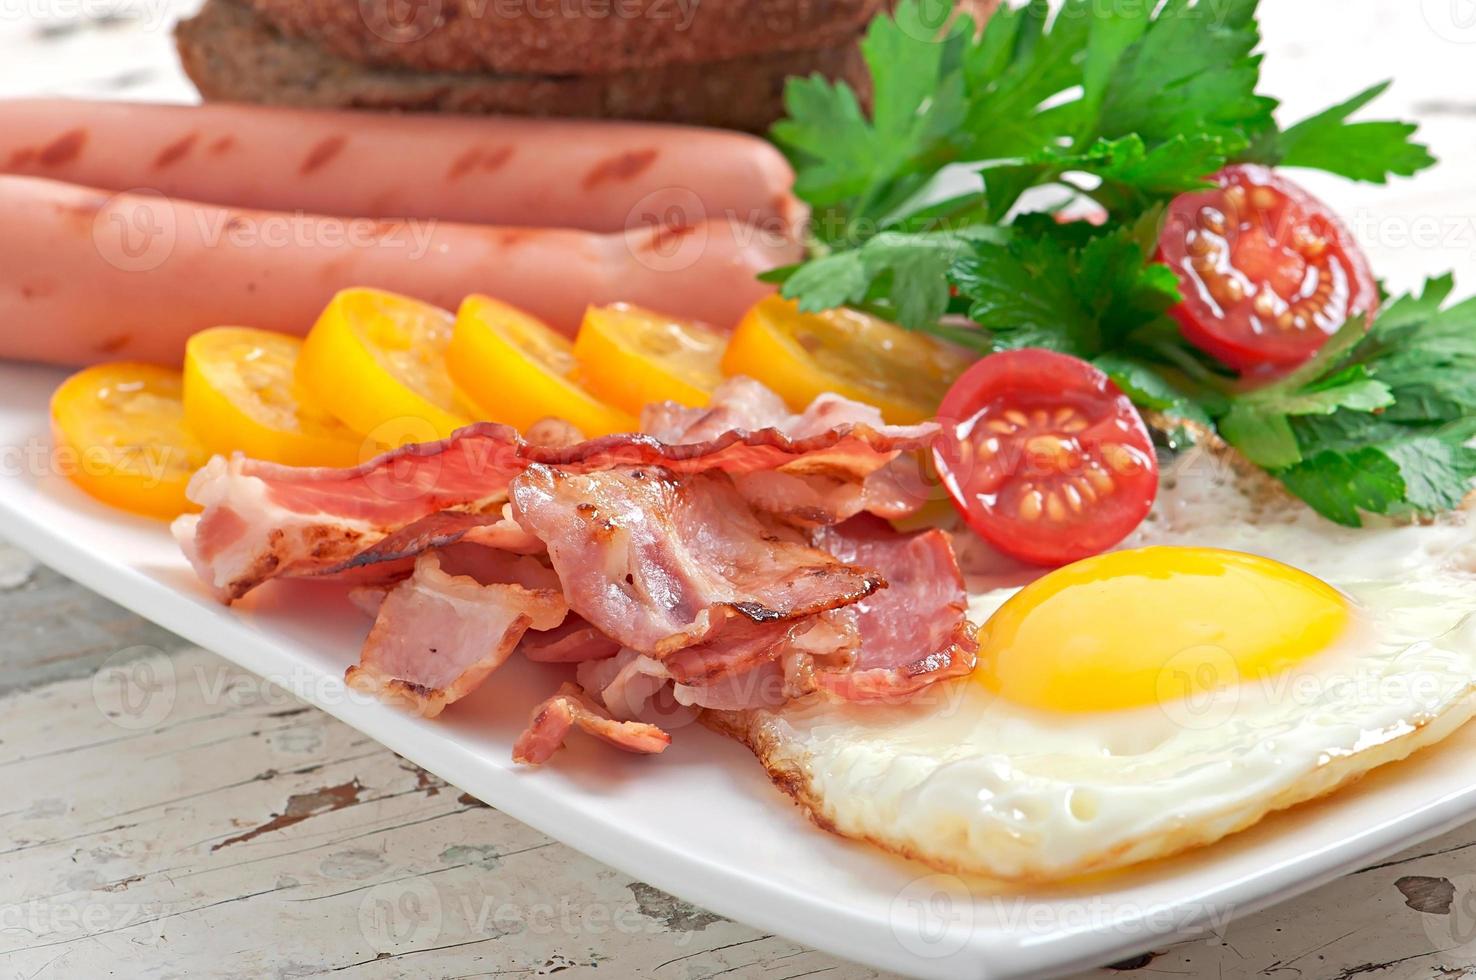 Engels ontbijt - gebakken eieren, spek, worstjes en geroosterd roggebrood foto